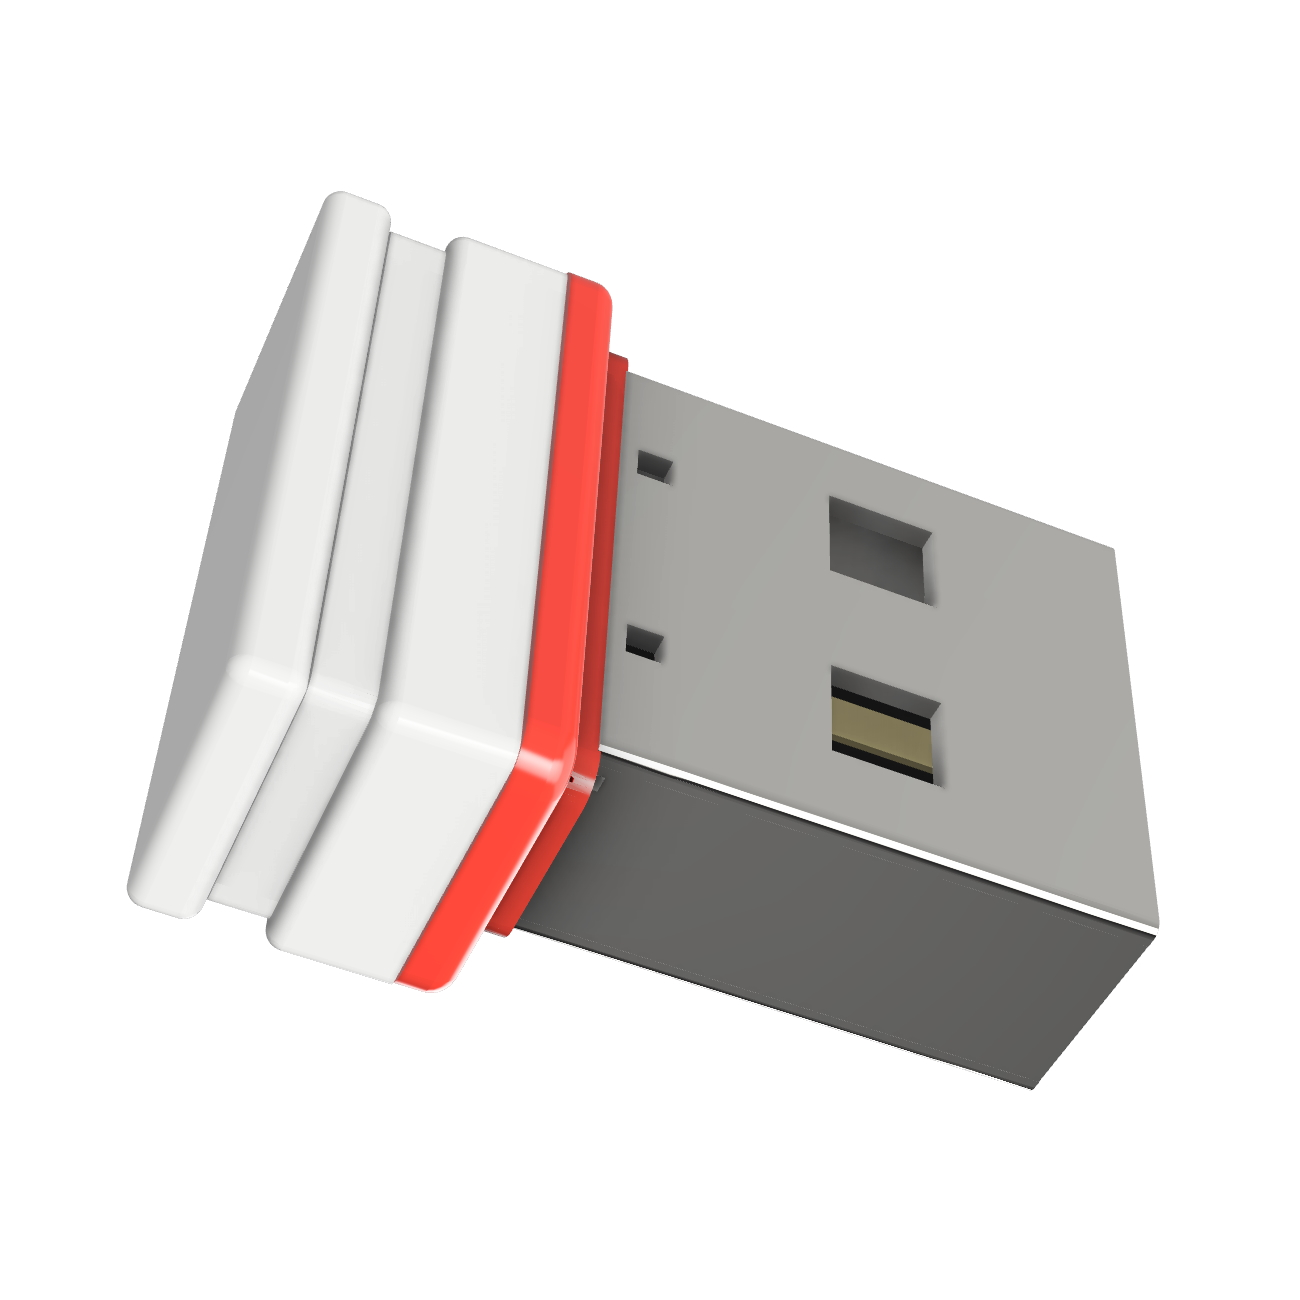 GERMANY P1 USB ®ULTRA 1 Mini (Weiss/Rot, GB) USB-Stick